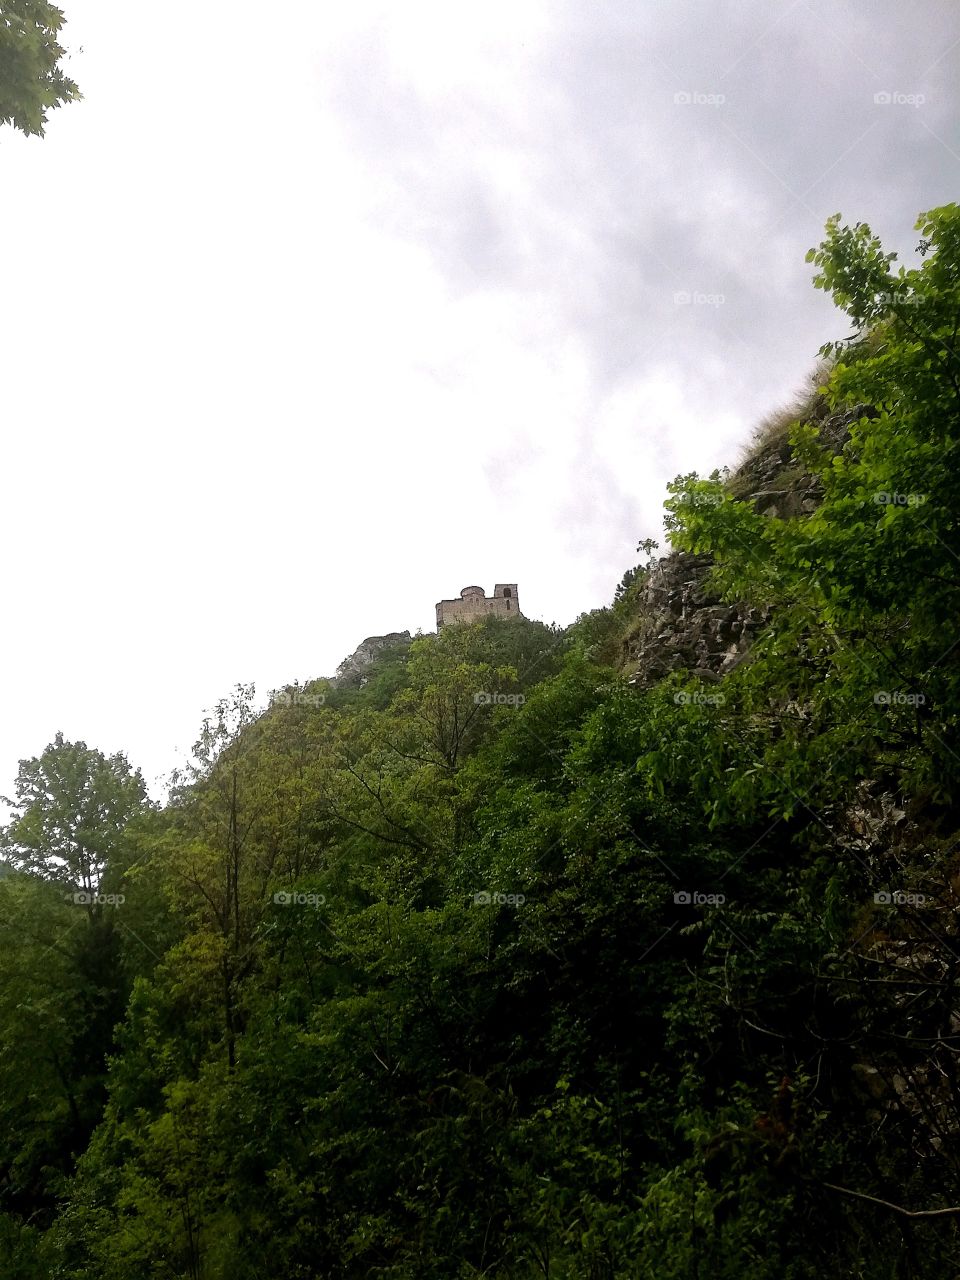 Assen's fortress